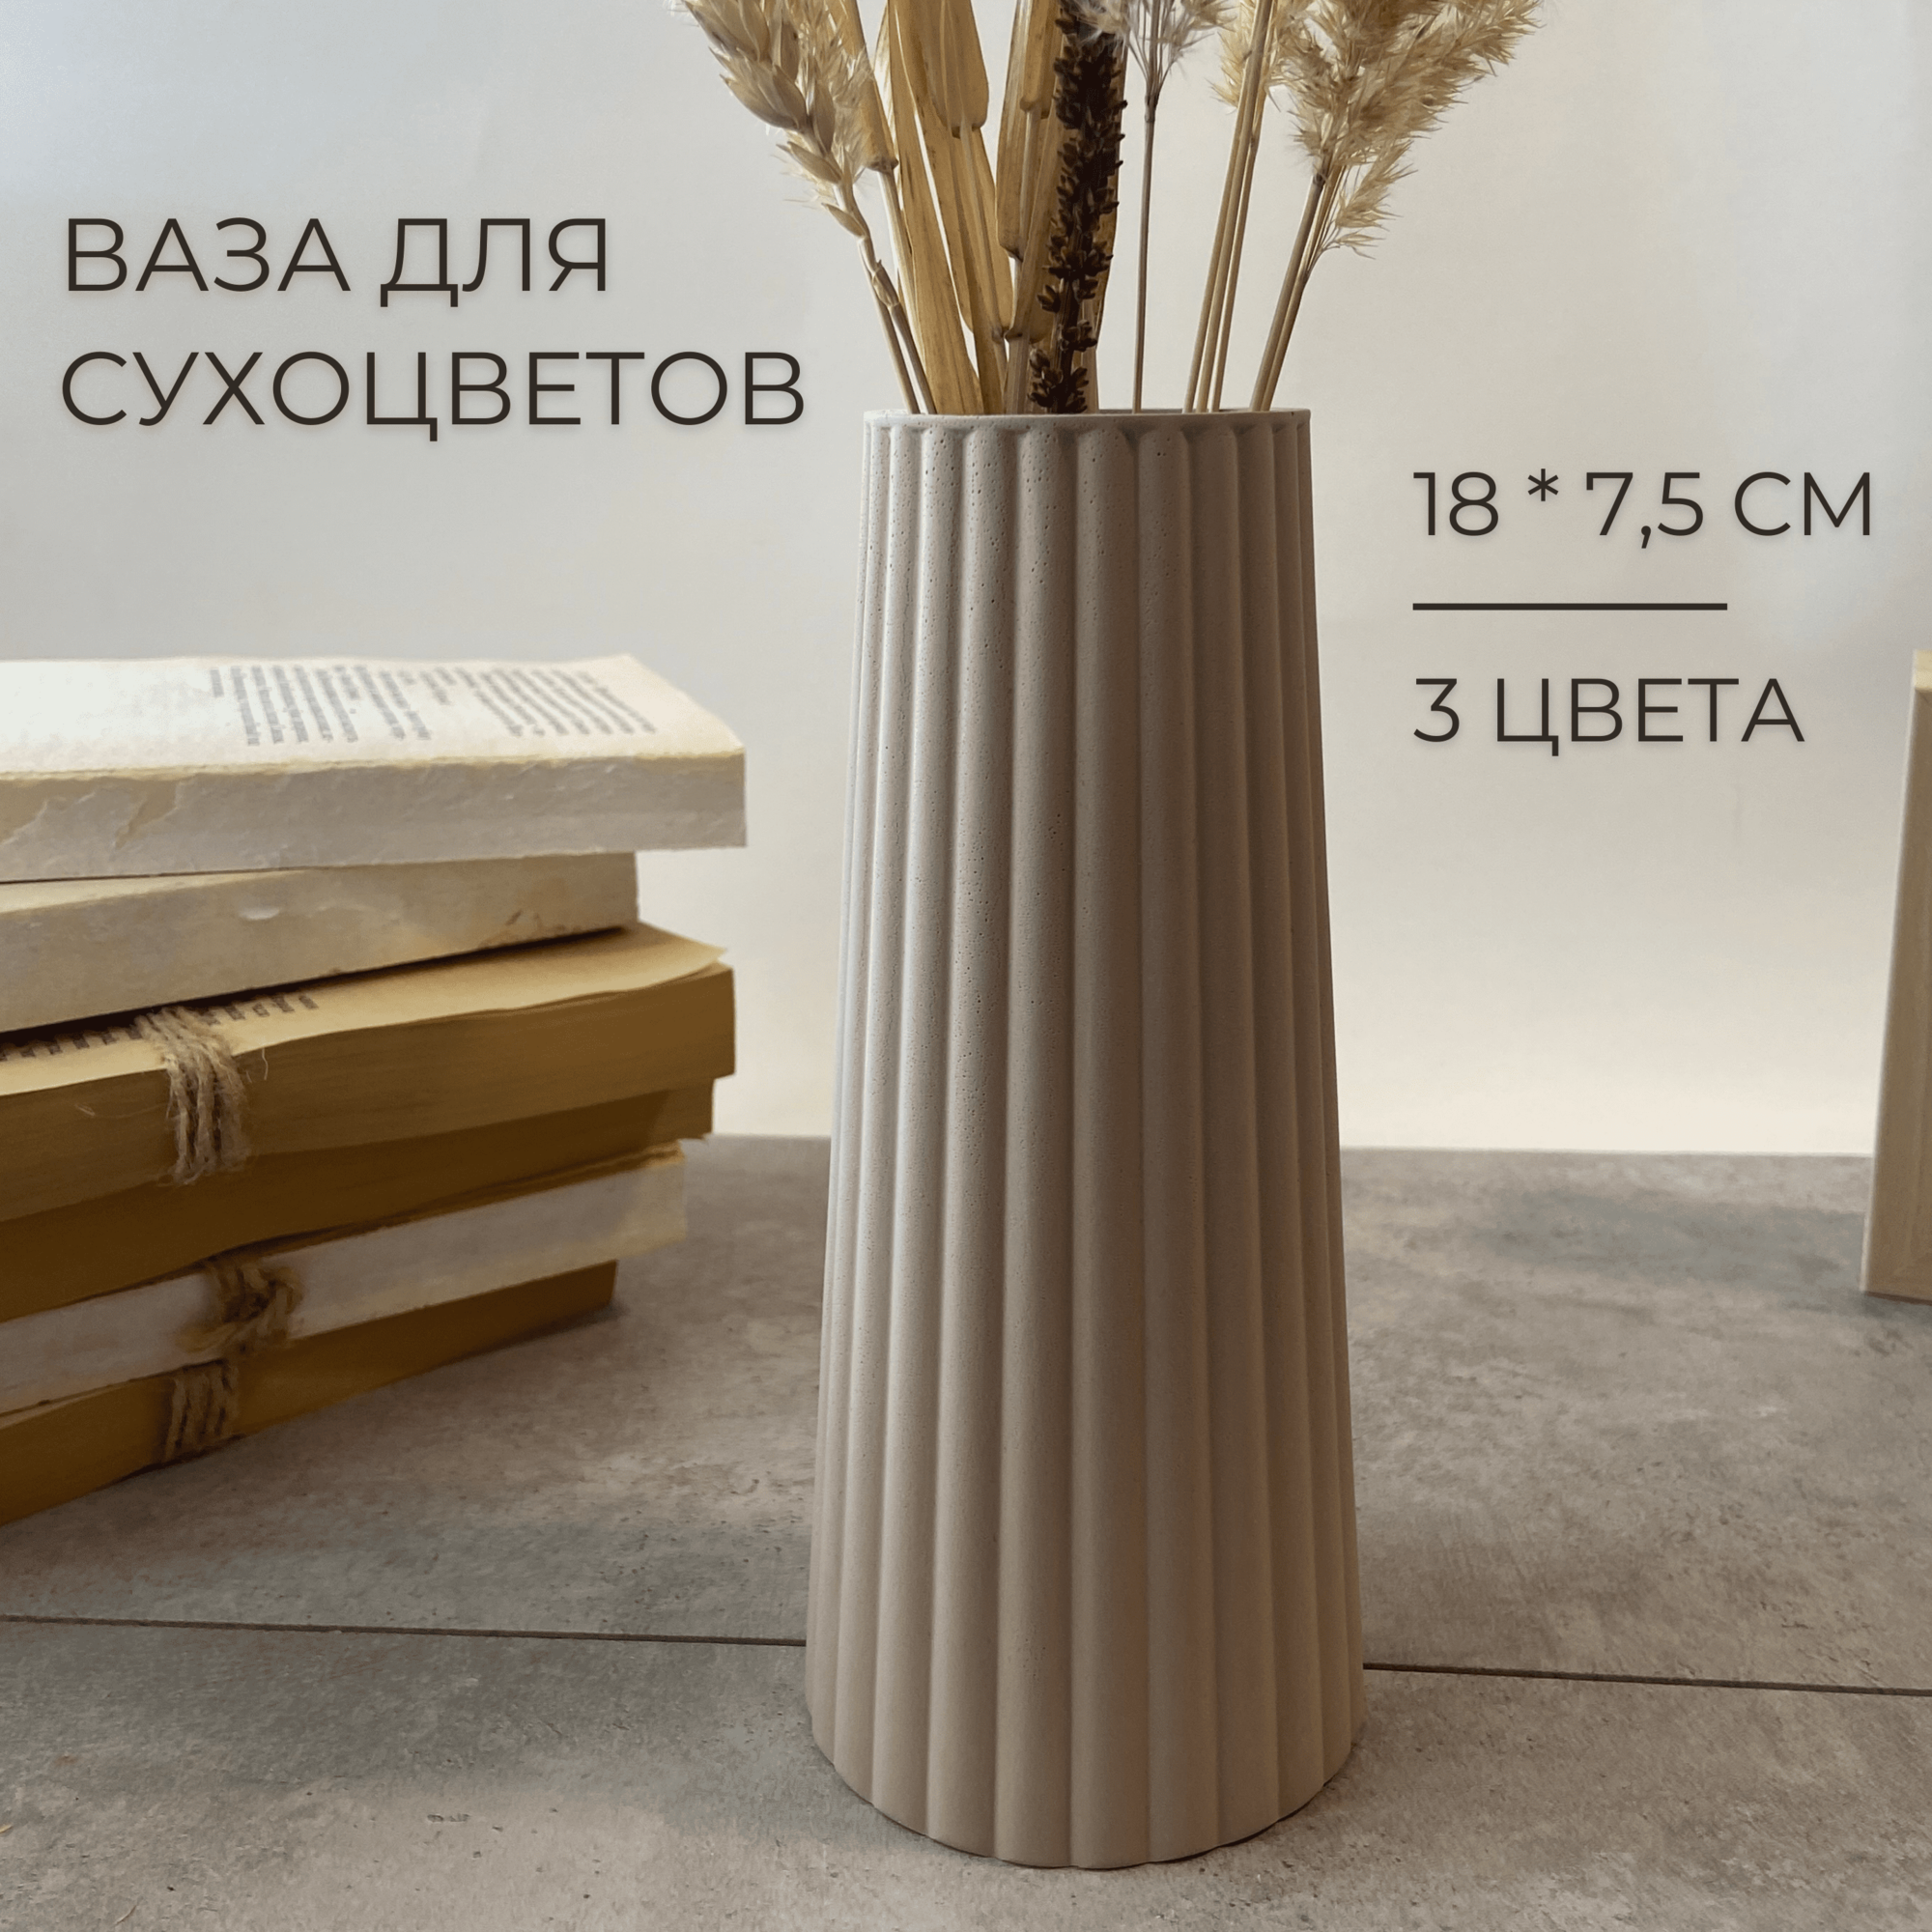 Большая декоративная ваза для сухоцветов 18 см настольная ваза для искусственных цветов и сухих букетов белый